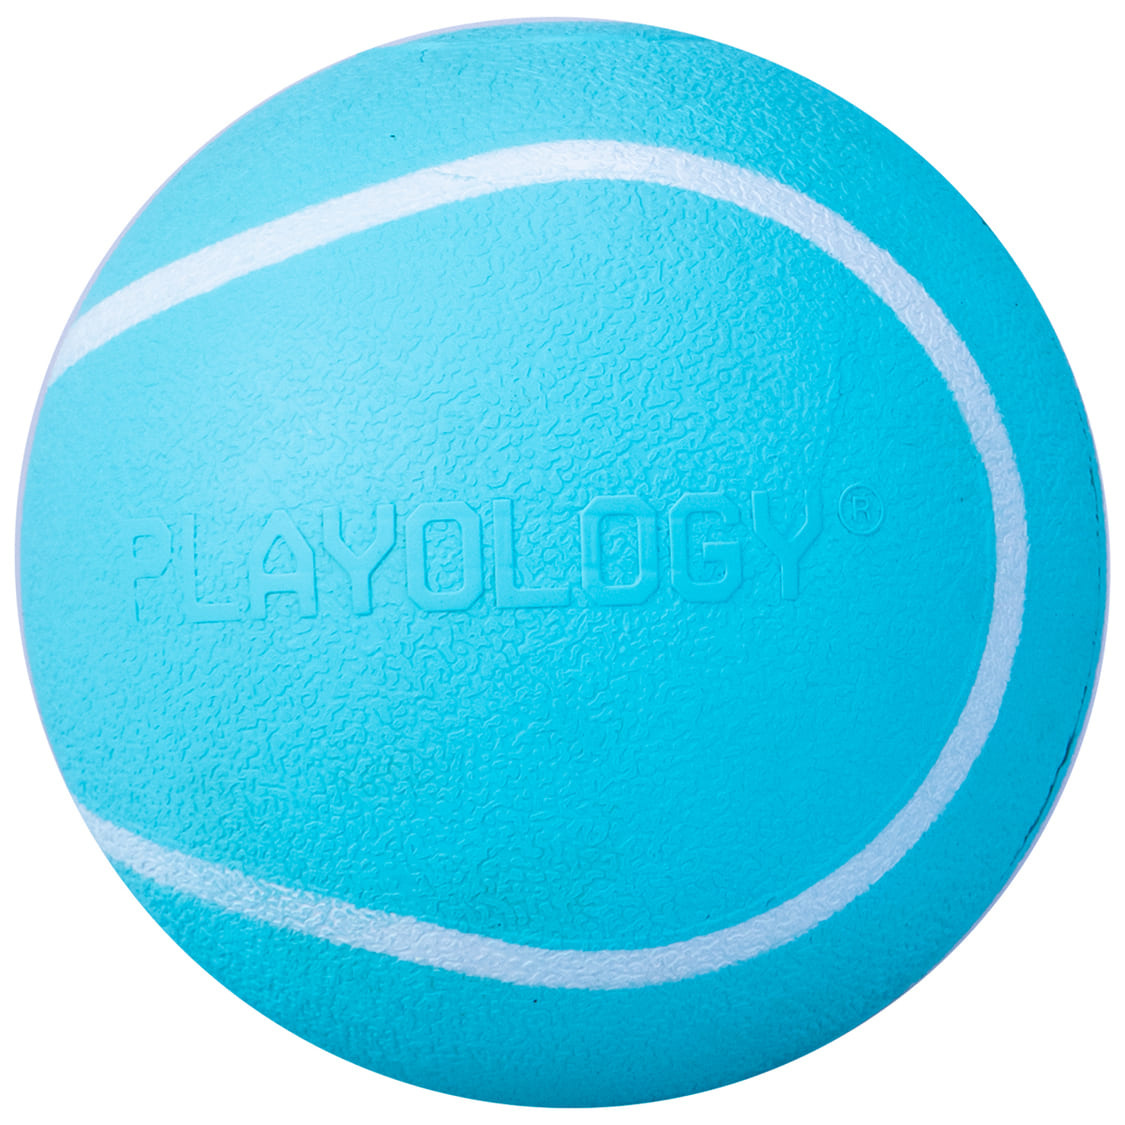 Playology Playology жевательный мяч Playology SQUEAKY CHEW BALL с пищалкой и с ароматом арахиса, цвет голубой (6 см)